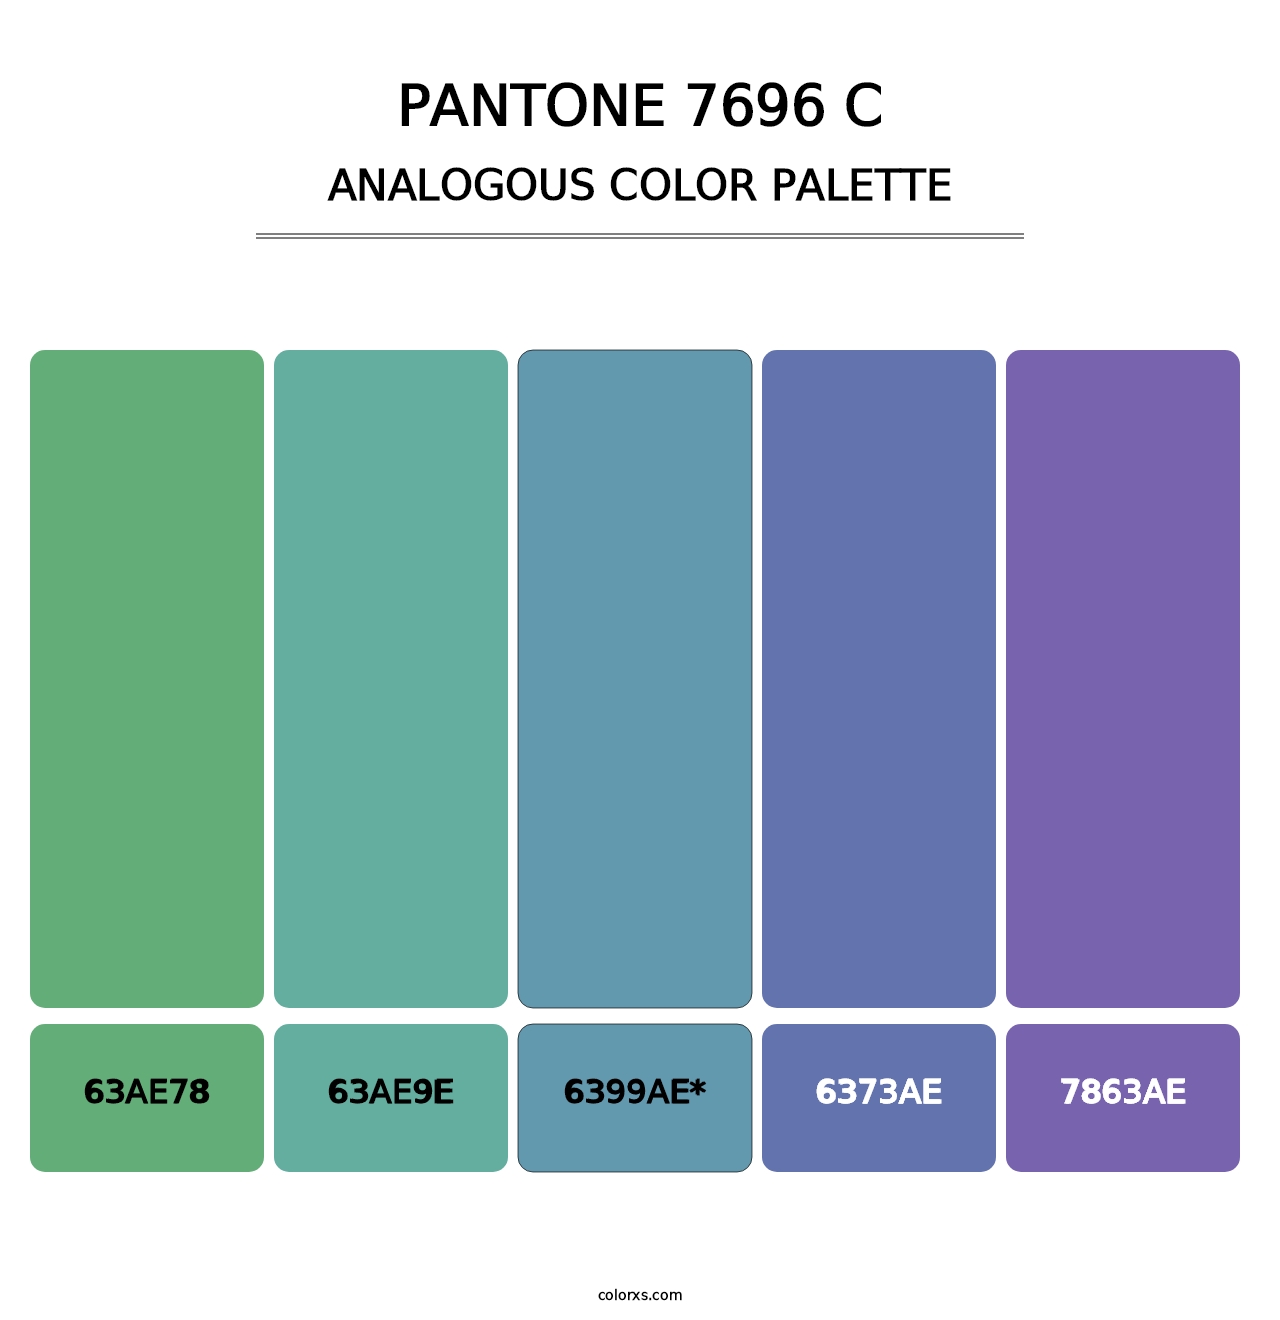 PANTONE 7696 C - Analogous Color Palette